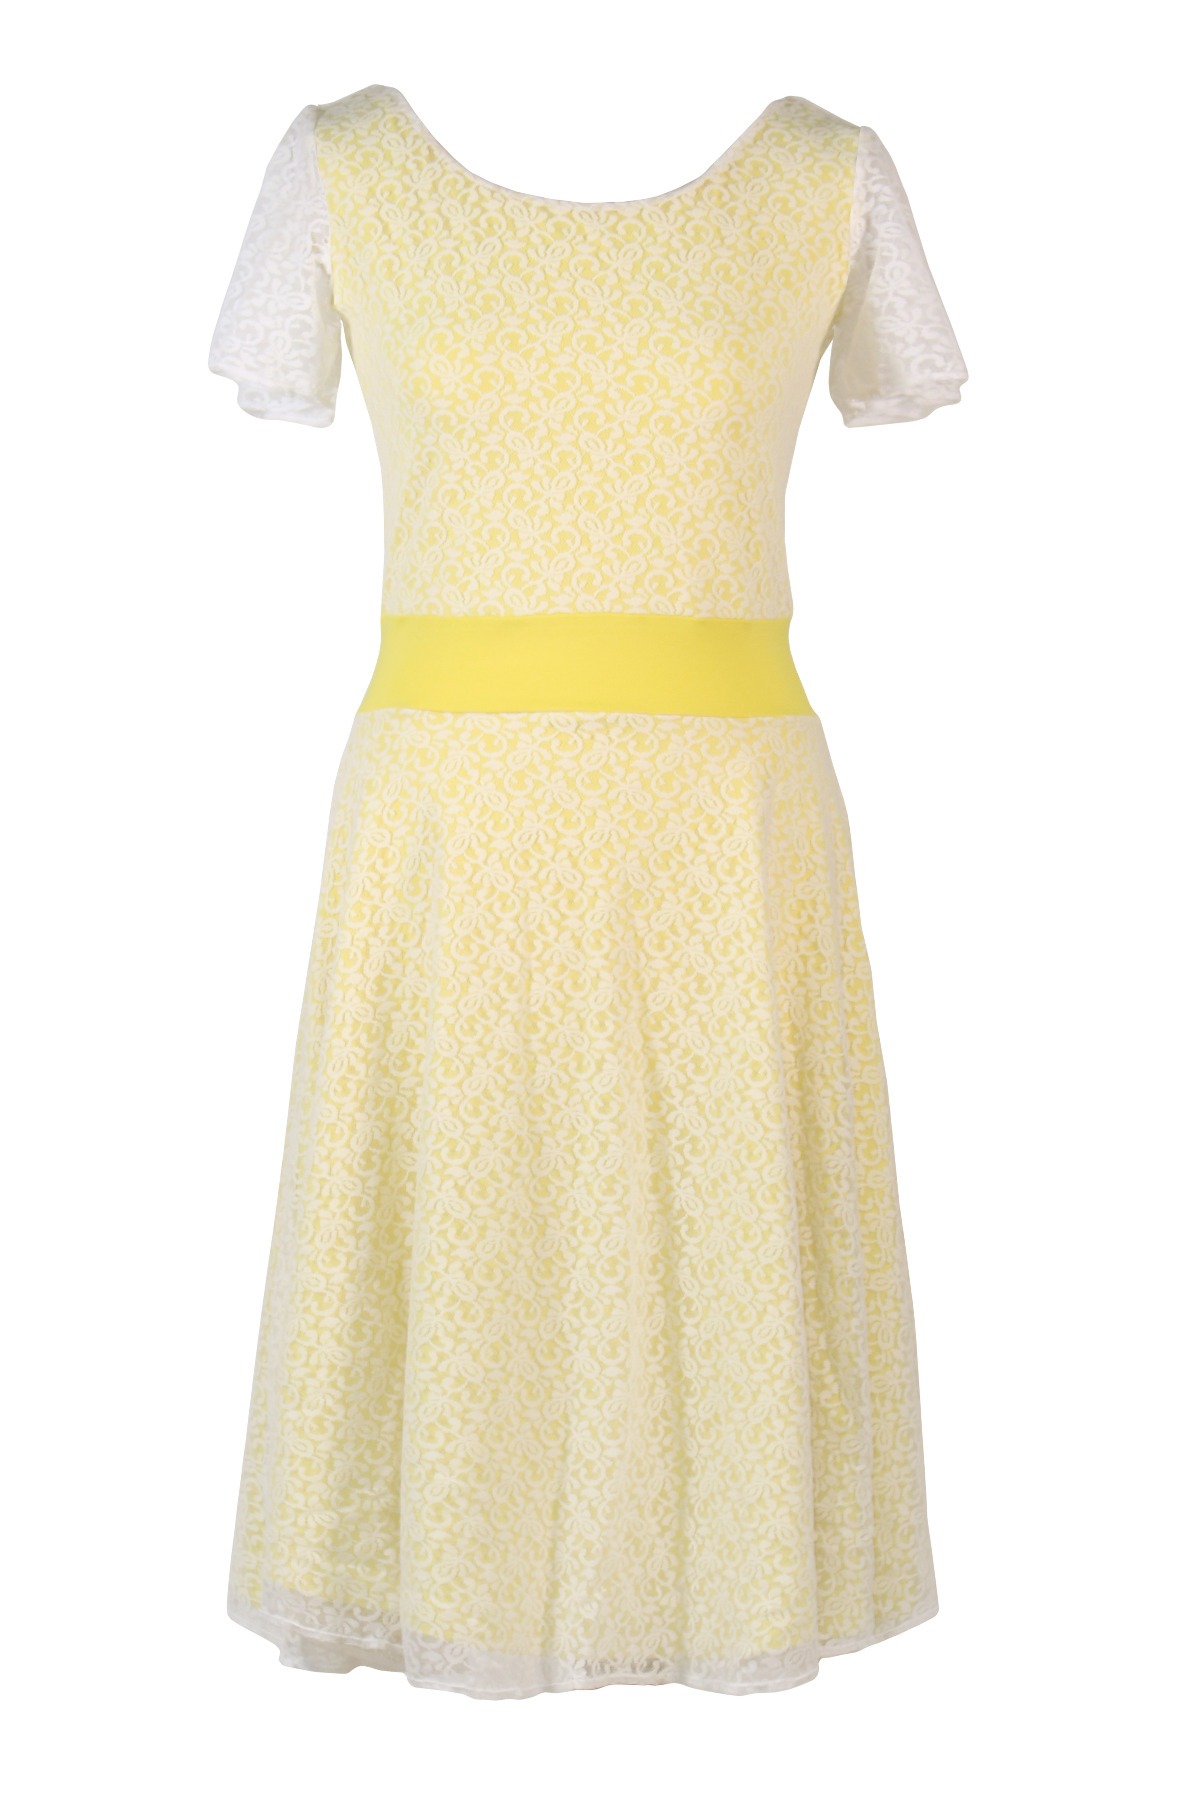 Bio-Kleid Perle zitrone gelb weiß